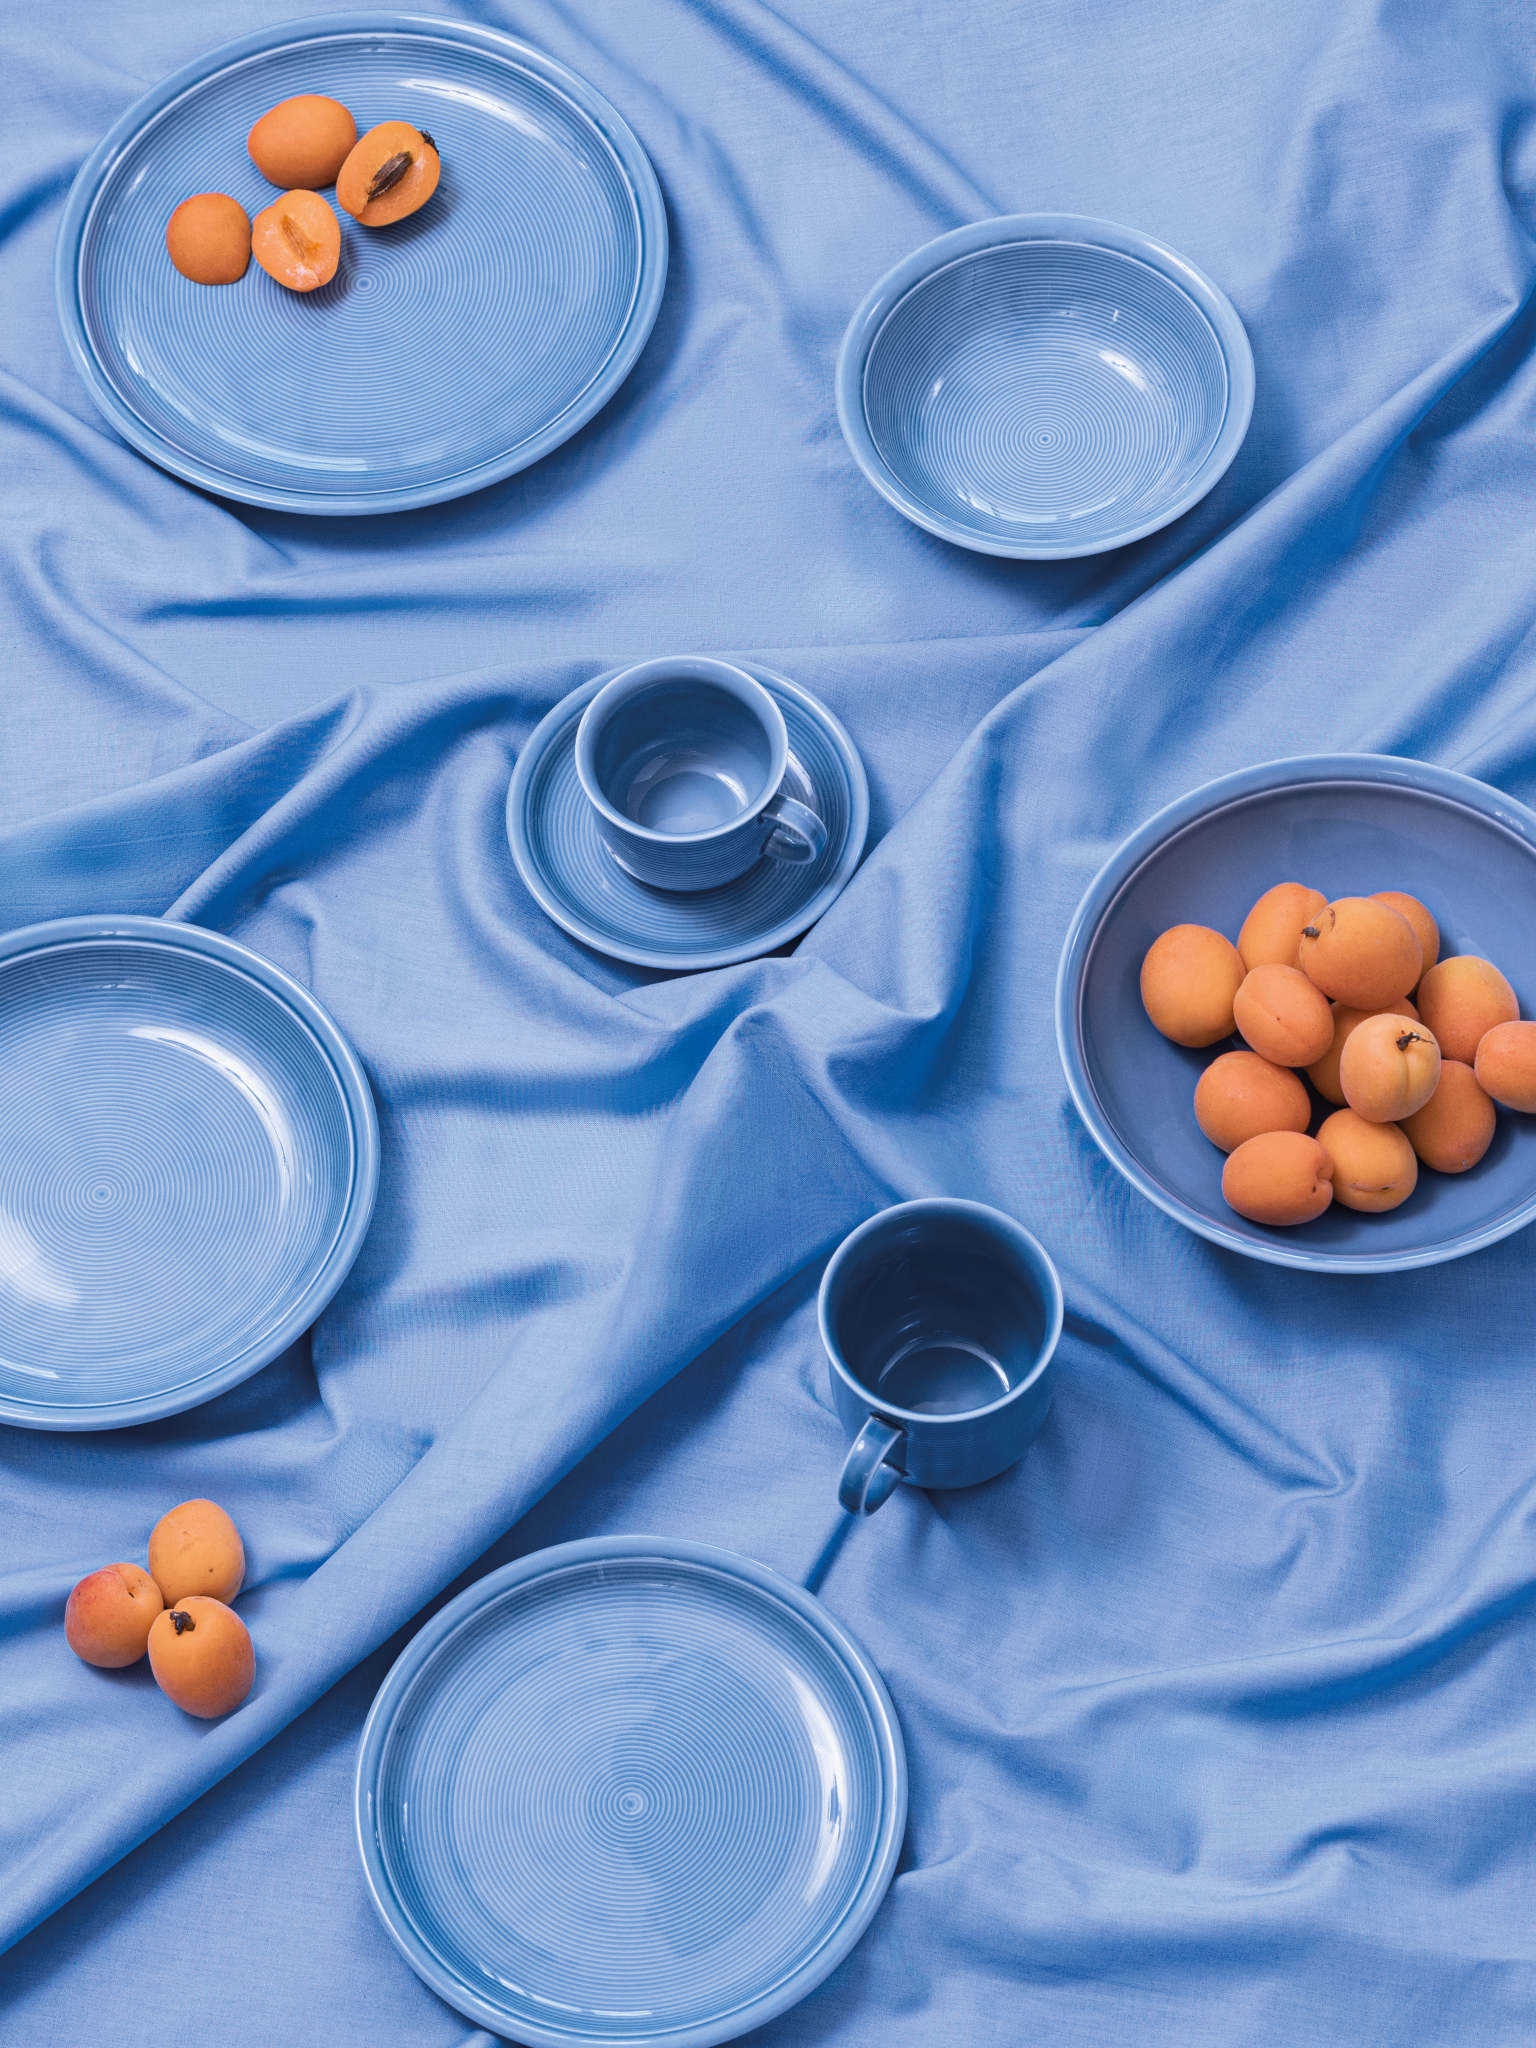 Thomas Trend Arctic Blue Teller und Tassen auf blauer Tischdecke mit Aprikosen dekoriert